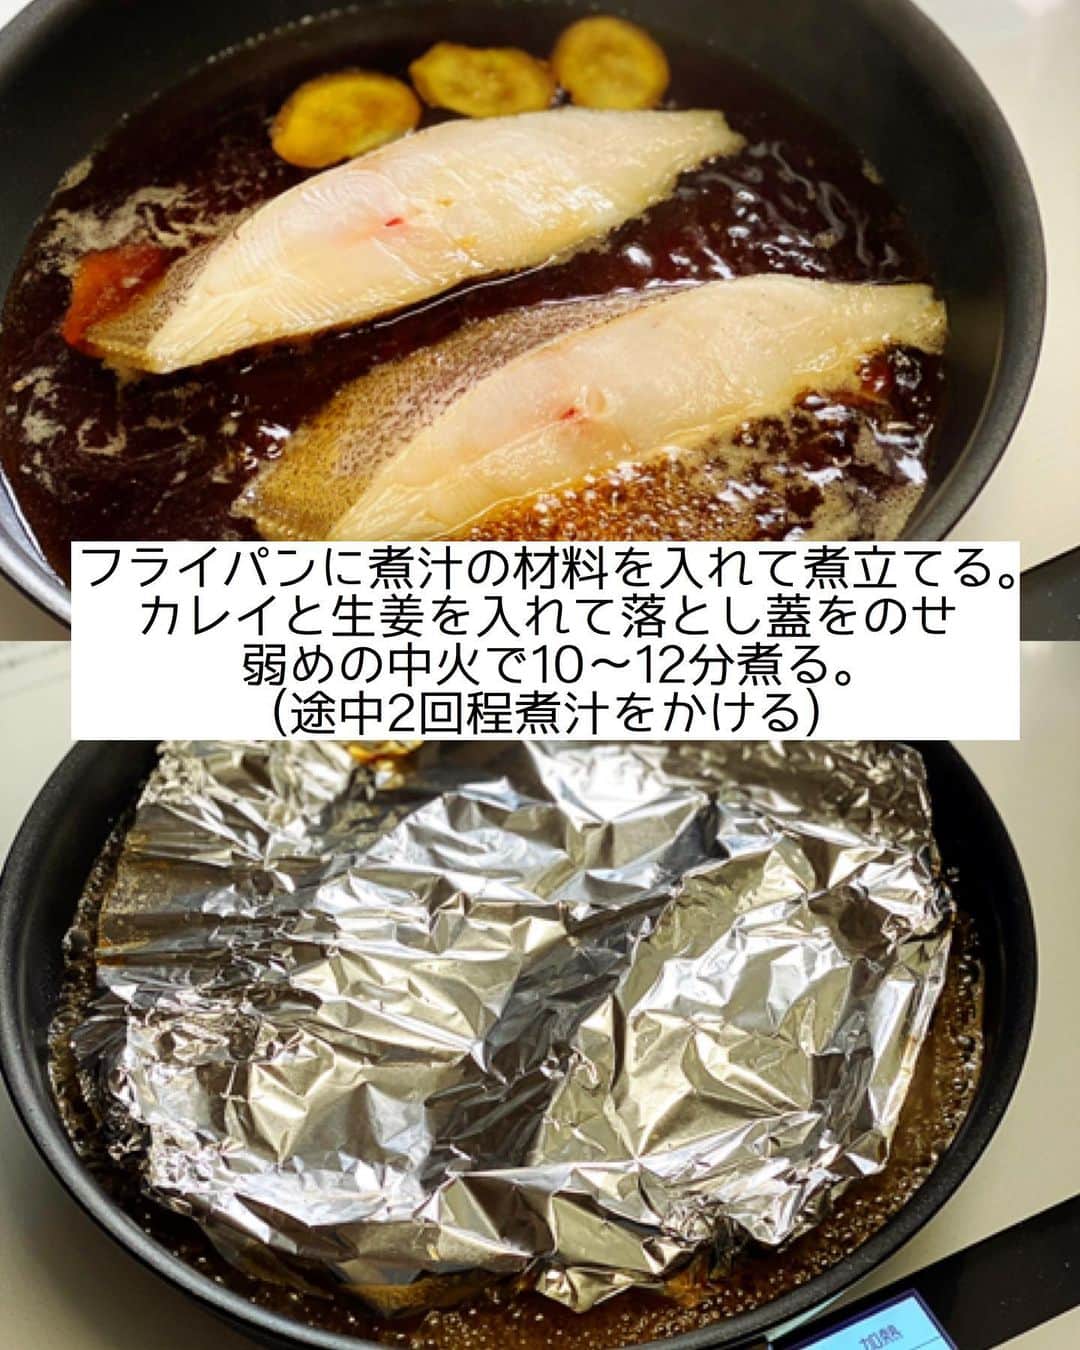 Mizuki【料理ブロガー・簡単レシピ】さんのインスタグラム写真 - (Mizuki【料理ブロガー・簡単レシピ】Instagram)「・﻿ 【#レシピ 】ーーーーー﻿ ♡カレイの煮付け♡﻿ (2品献立提案あり)﻿ ーーーーーーーーーーー﻿ ﻿ ﻿ ﻿ おはようございます(*^^*)﻿ ﻿ 今日もリクエストいただいた﻿ お魚レシピをご紹介します♩﻿ ﻿ 今回はお魚料理の定番［煮付け］﻿ 柔らかな身で食べやすいカレイを使って﻿ しっかり濃い目の甘辛味に仕上げました♡﻿ これ、とってもごはんがすすみますよ♩﻿ ﻿ フライパンで煮るだけなので﻿ お気軽にお試し下さいね(*^^*)﻿ ﻿ ﻿ ﻿ ＿＿＿＿＿＿＿＿＿＿＿＿＿＿＿＿＿＿＿＿﻿ 【2人分】﻿ カレイ...2切れ﻿ 生姜...1/2かけ﻿ ●水...200ml﻿ ●酒・砂糖・醤油...各大2.5﻿ (好みで)小松菜...1/2束﻿ ﻿ 1.カレイは表面の水気を拭き取る。生姜は薄切りにする。﻿ 2.小さめのフライパンに●を入れて火にかけ、煮立ったらカレイと生姜を入れる。再び煮立ったらアルミホイルの落とし蓋をのせ、弱めの中火で10〜12分煮る。(途中2回程煮汁をかける)﻿ 3.器に盛り、別茹でした小松菜を添える。﻿ ￣￣￣￣￣￣￣￣￣￣￣￣￣￣￣￣￣￣￣￣﻿ ﻿ ﻿ ﻿ 《ポイント》﻿ ♦︎しっかり濃いめの味付けです♩﻿ ♦︎大きめの切り身を使用しています♩小さめなら3切れ分作れます☆﻿ ♦︎皮の面積が大きい場合は切り込みを入れておくと◎﻿ ♦︎カレイの身は柔らかいので煮ている時はいじらない！盛り付ける時もヘラなどを使って下さい♩﻿ ﻿ ﻿ ﻿ ﻿ ﻿ ﻿ ﻿ ＿＿＿＿＿＿＿＿＿＿＿＿＿＿＿＿﻿ 🥣🥣🥣 2品献立提案 🥣🥣🥣﻿ ￣￣￣￣￣￣￣￣￣￣￣￣￣￣￣￣﻿ 【合間に作れるおすすめ副菜】﻿ >豚ニラもやしスープ(P.31)﻿ >しめじと厚揚げの煮物(P.33)﻿ (#Mizukiの2品献立 より)﻿ ﻿ 【献立の段取り】﻿ カレイを煮ている間に﻿ 副菜をレンチンする🥢﻿ ￣￣￣￣￣￣￣￣￣￣￣￣￣￣￣￣￣﻿ ﻿ ﻿ ﻿ ﻿ ﻿ ﻿ ⭐️発売中⭐️3刷重版が決まりました😭﻿ 本当にありがとうございます(涙)﻿ _____________________________________﻿ \15分でいただきます/﻿ 📕#Mizukiの2品献立 📕﻿ (9月24日発売・マガジンハウス)﻿ ￣￣￣￣￣￣￣￣￣￣￣￣￣￣￣￣￣﻿ ﻿ 忙しい私たちには﻿ 2品くらいがちょうどいい！﻿ 『しんどくない献立、考えました』﻿ ￣￣￣￣￣￣￣￣￣￣￣￣￣￣￣￣﻿ ﻿ ーーーーーPART.1 ーーーーー﻿ 【Mizukiのお墨つき！２品献立ベスト10】﻿ 約15分でできる10献立をご紹介！﻿ メインは全部フライパン、副菜はレンチンor混ぜるだけ♡﻿ ﻿ ーーーーーPART.2 ーーーーー﻿ 【フライパンひとつ！今夜のメインおかず】﻿ 献立の主役になる肉や魚のおかず50品！﻿ Part3の副菜と組み合わせれば﻿ 献立のバリエーションが広がりますよ♩﻿ ﻿ ーーーーー PART.3 ーーーーー﻿ 【合間に作れる！ 野菜別かんたん副菜】﻿ レンチンor和えるだけの副菜レシピを﻿ 素材別にたっぷり収録♩﻿ ﻿ ーーーーー番外編ーーーーー﻿ 【ひとつで満足！ご飯＆麺】﻿ 【具だくさん！おかずスープ】﻿ 【オーブンいらずのおやつレシピ】﻿ ￣￣￣￣￣￣￣￣￣￣￣￣￣￣￣￣￣￣﻿ (ハイライトにリンク🔗あります💗)﻿ ﻿ ﻿ ﻿ ﻿ ＿＿＿＿＿＿＿＿＿＿＿＿＿＿＿＿＿＿﻿ レシピを作って下さった際や﻿ レシピ本についてのご投稿には﻿ タグ付け( @mizuki_31cafe )して﻿ お知らせいただけると嬉しいです😊💕﻿ ￣￣￣￣￣￣￣￣￣￣￣￣￣￣￣￣￣￣﻿ ﻿ ﻿ ﻿ ﻿ #煮魚#カレイ#魚#フライパン#Mizuki#簡単レシピ#時短レシピ#節約レシピ#料理#フーディーテーブル#マカロニメイト#おうちごはん#デリスタグラマー#料理好きな人と繋がりたい#食べ物#料理記録#おうちごはんlover#写真好きな人と繋がりたい#foodpic#cooking#recipe#lin_stagrammer#foodporn#yummy#f52grams#カレイの煮付けm」11月14日 7時39分 - mizuki_31cafe